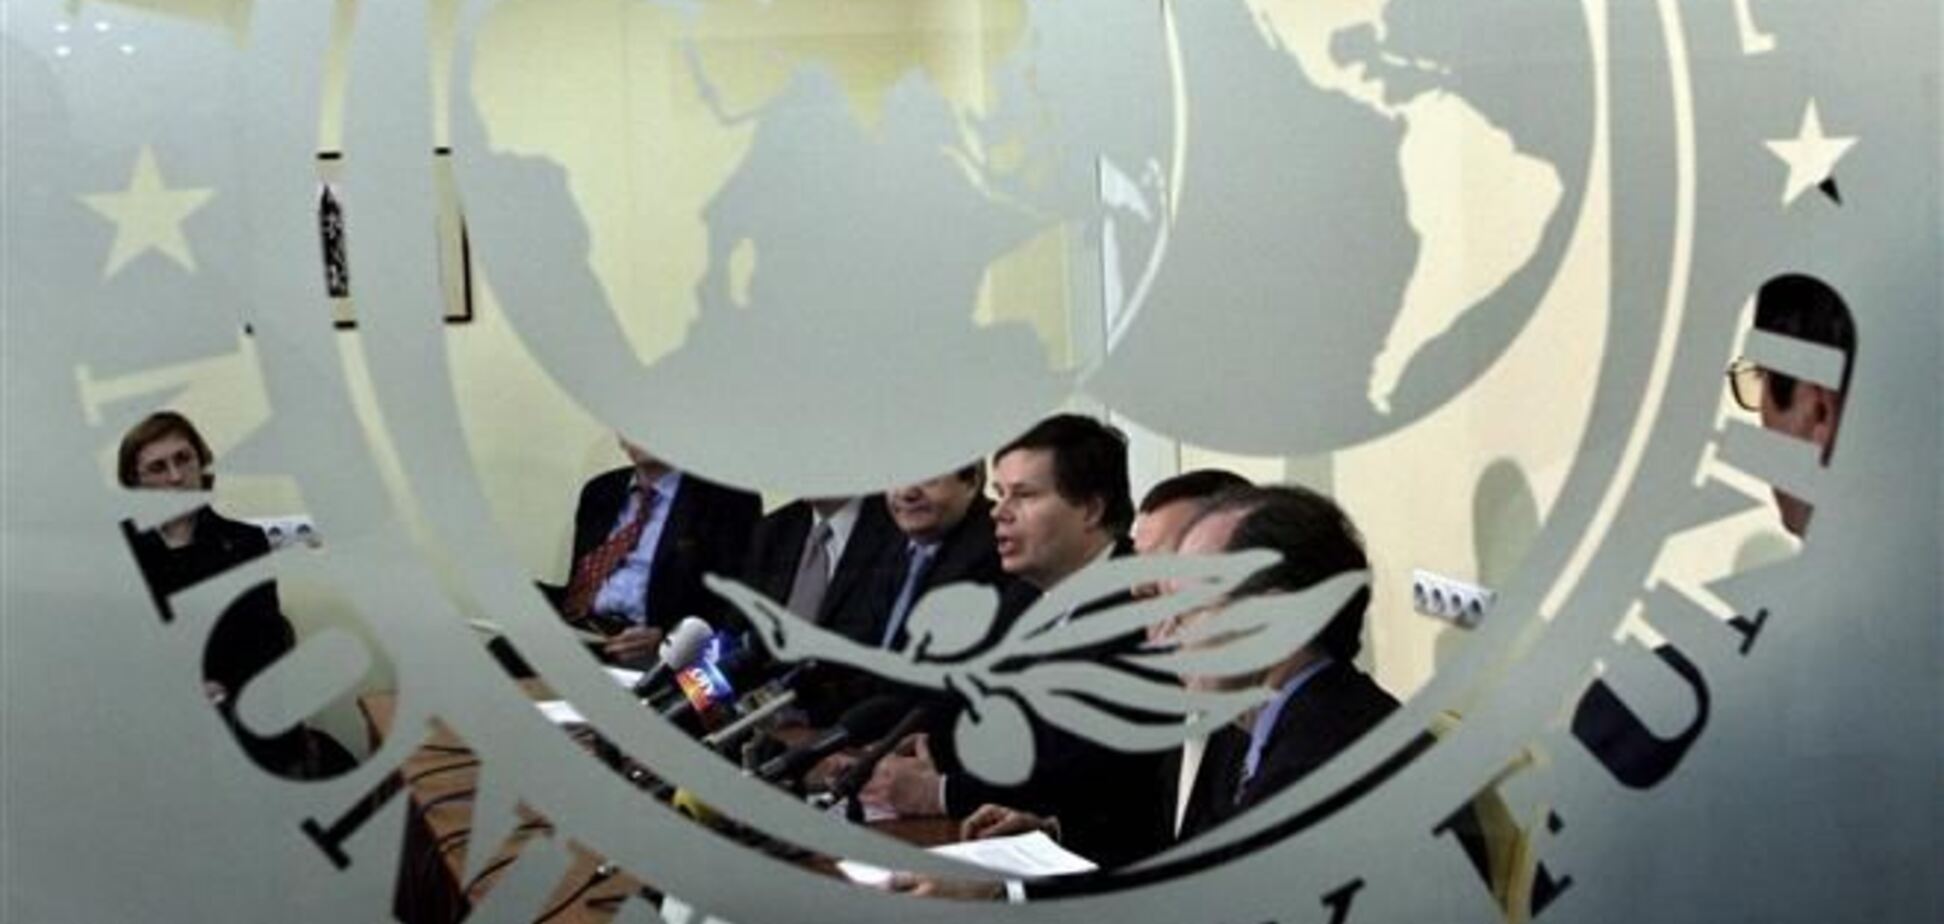 МВФ: экономика Украины в 2014 году будет уязвимой